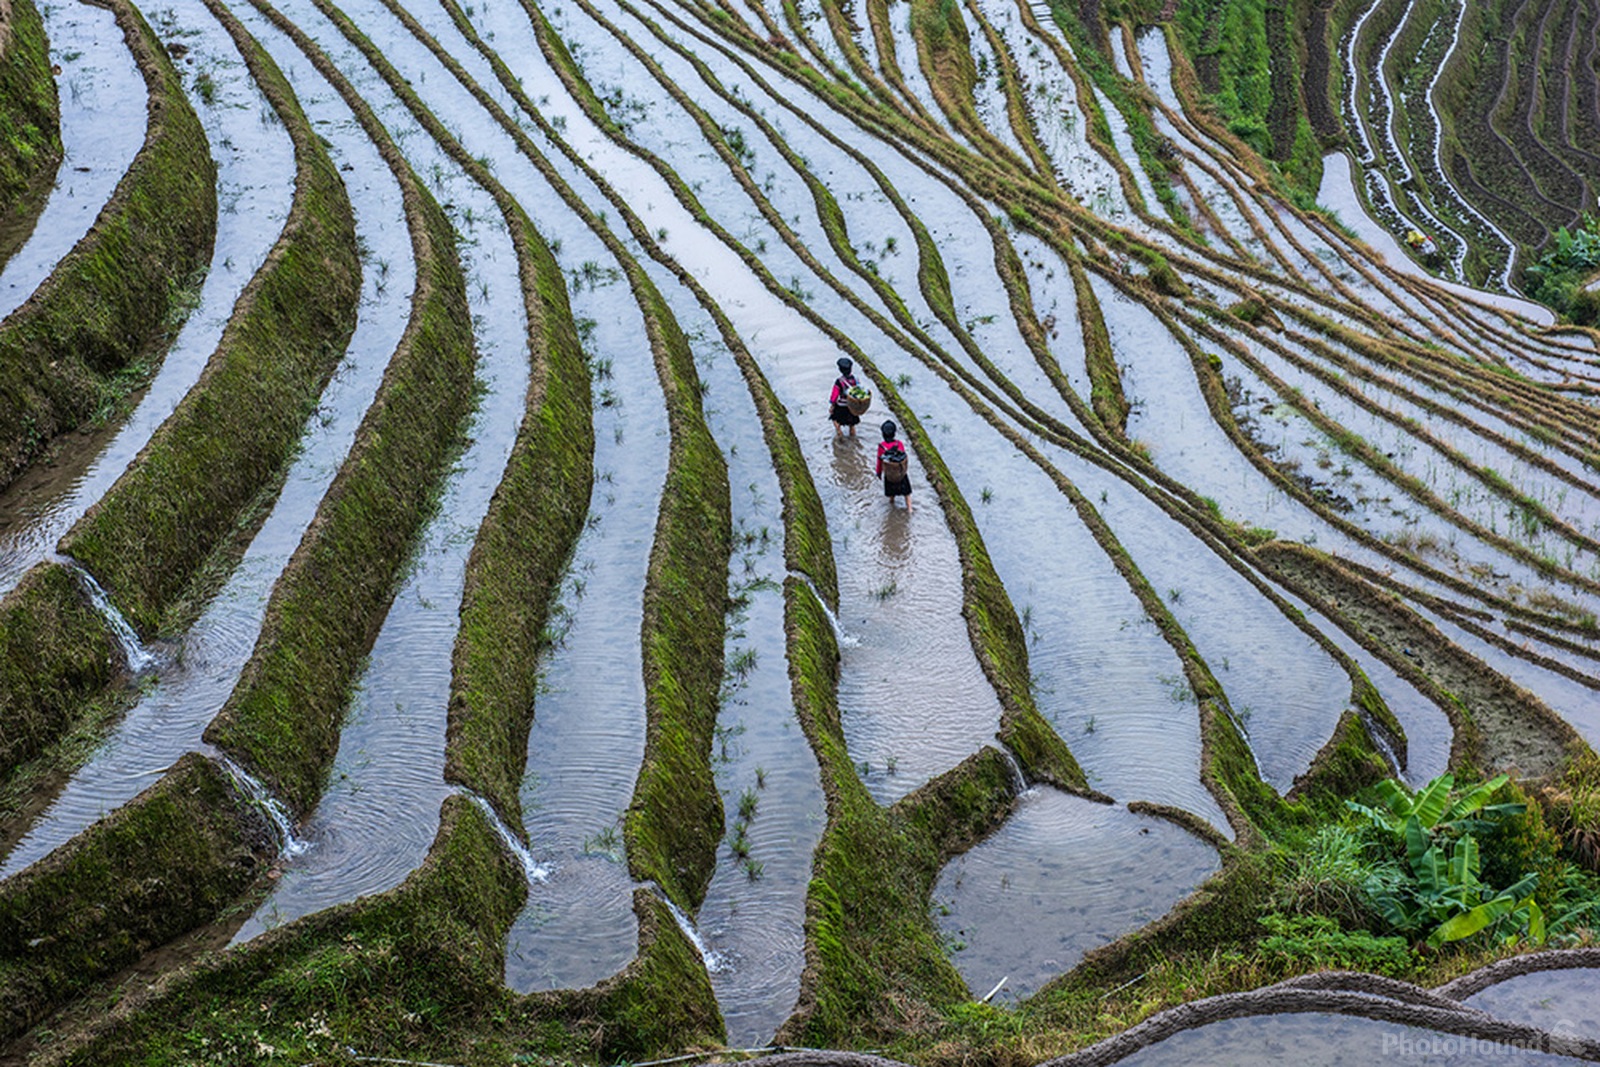 Image of Longji Terraced Fields by Mercier Zeng